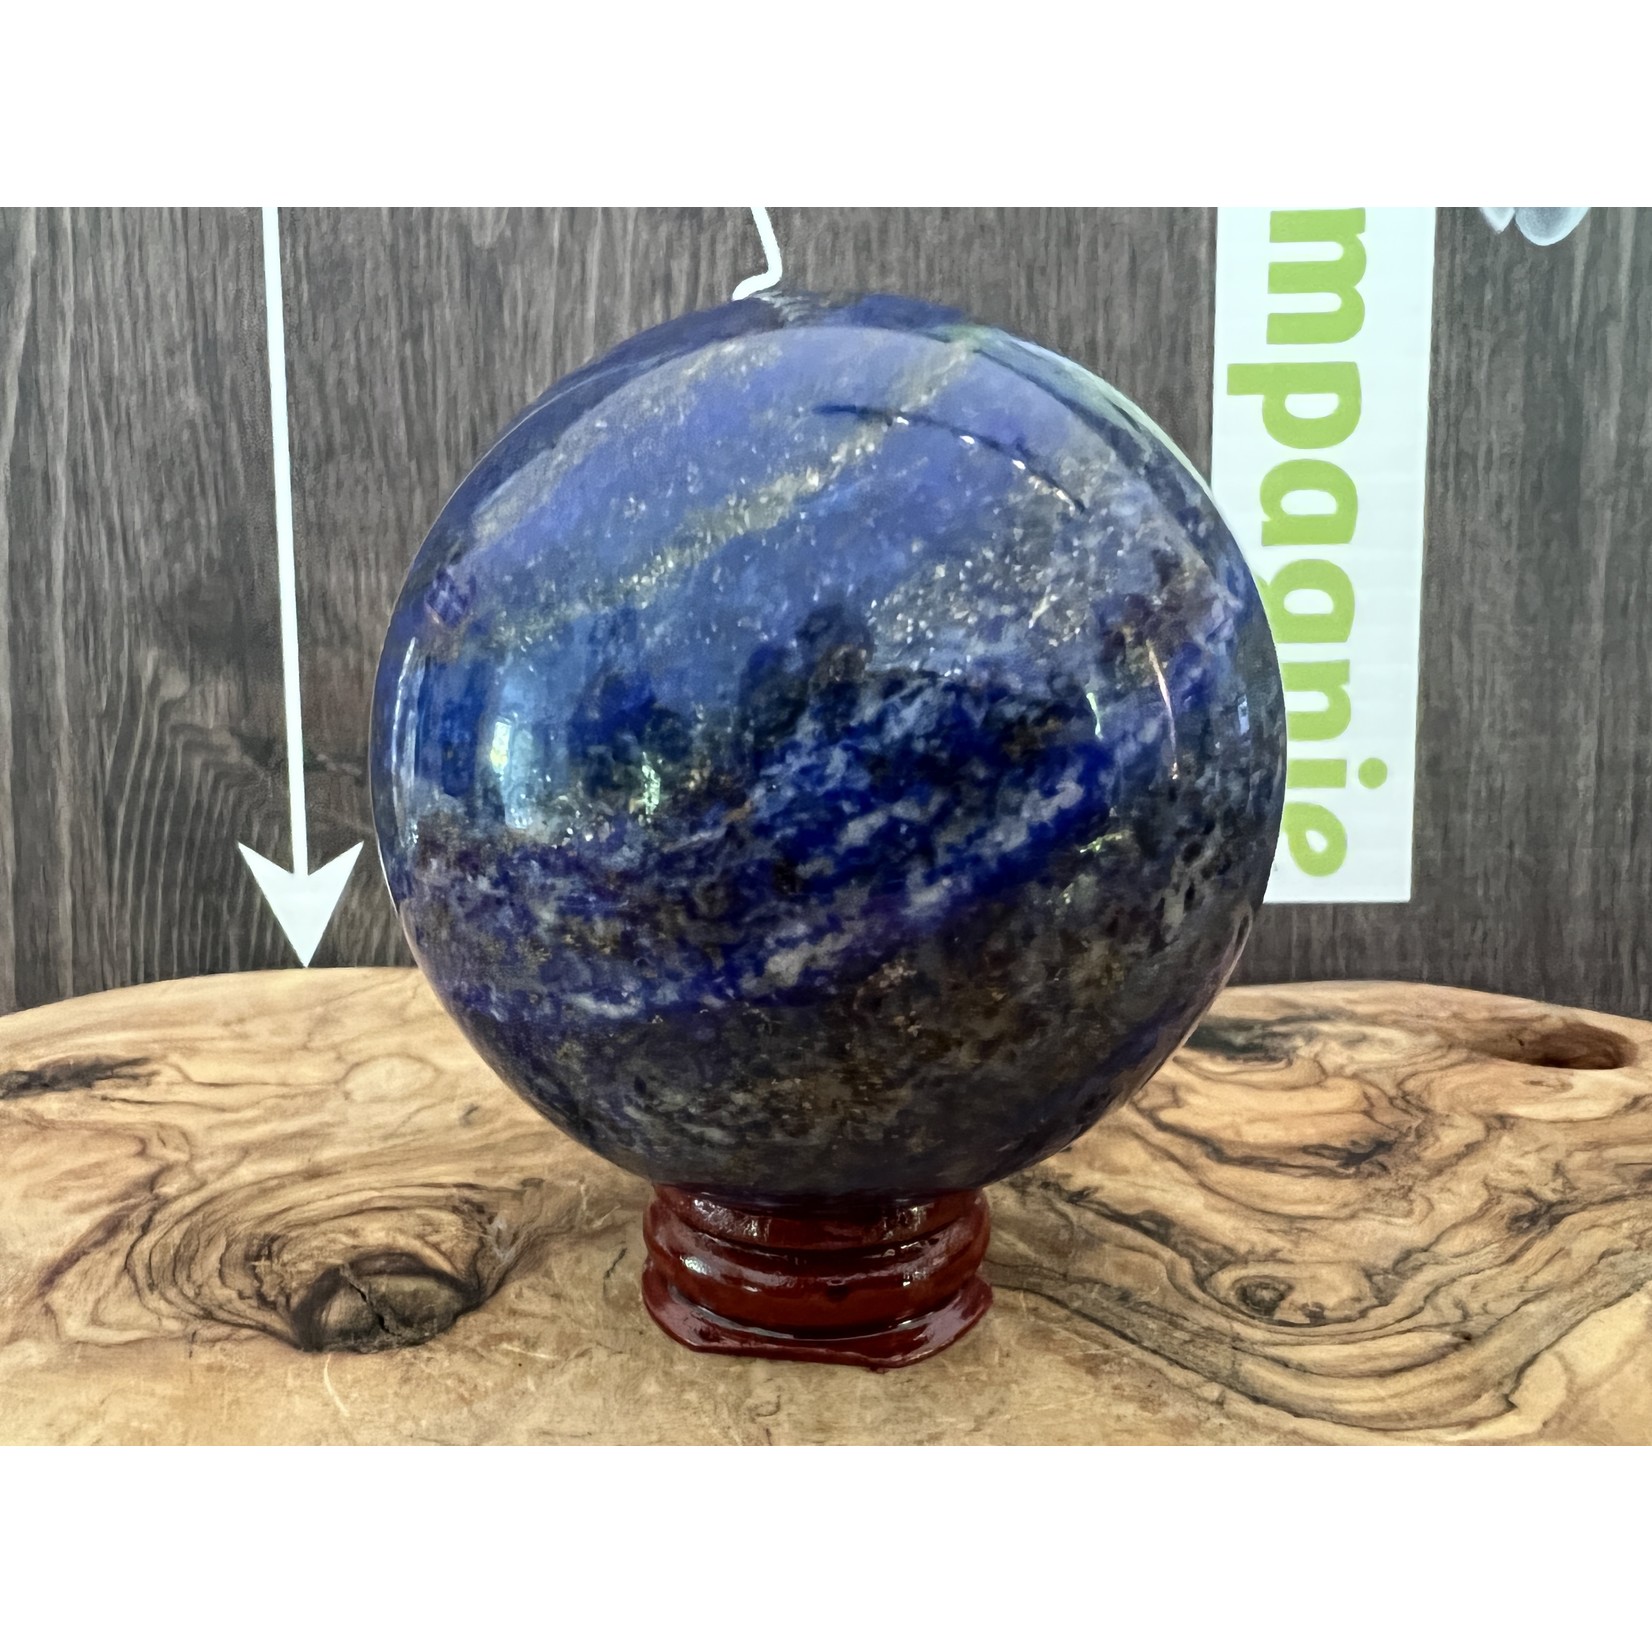 parfait support en bois pour sphère, base de bois pour boule de cristal, socle artisanal en bois rouge verni